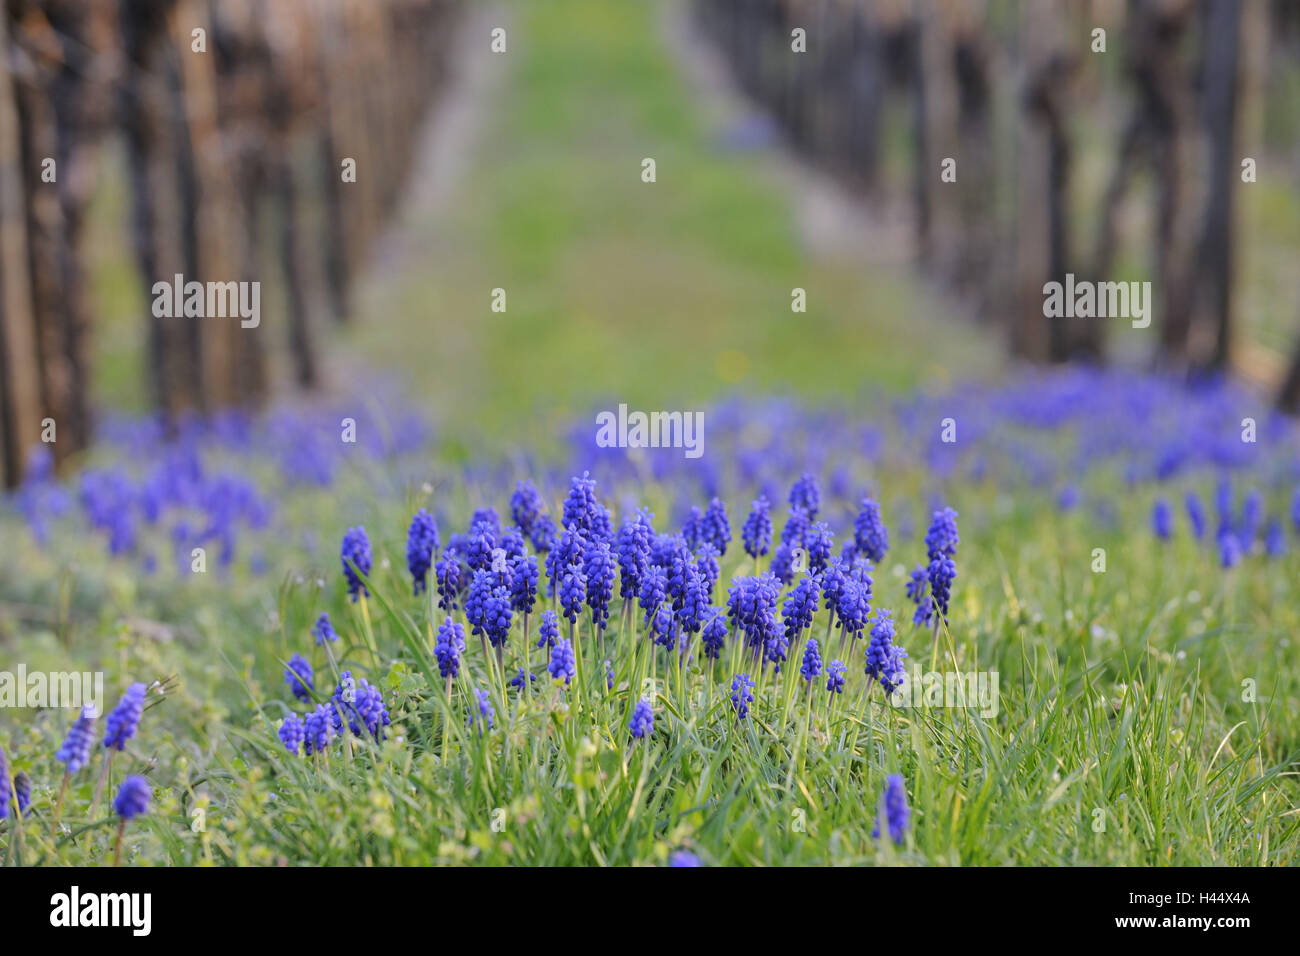 Grape hyacinths, Muscari botryoides, Stock Photo